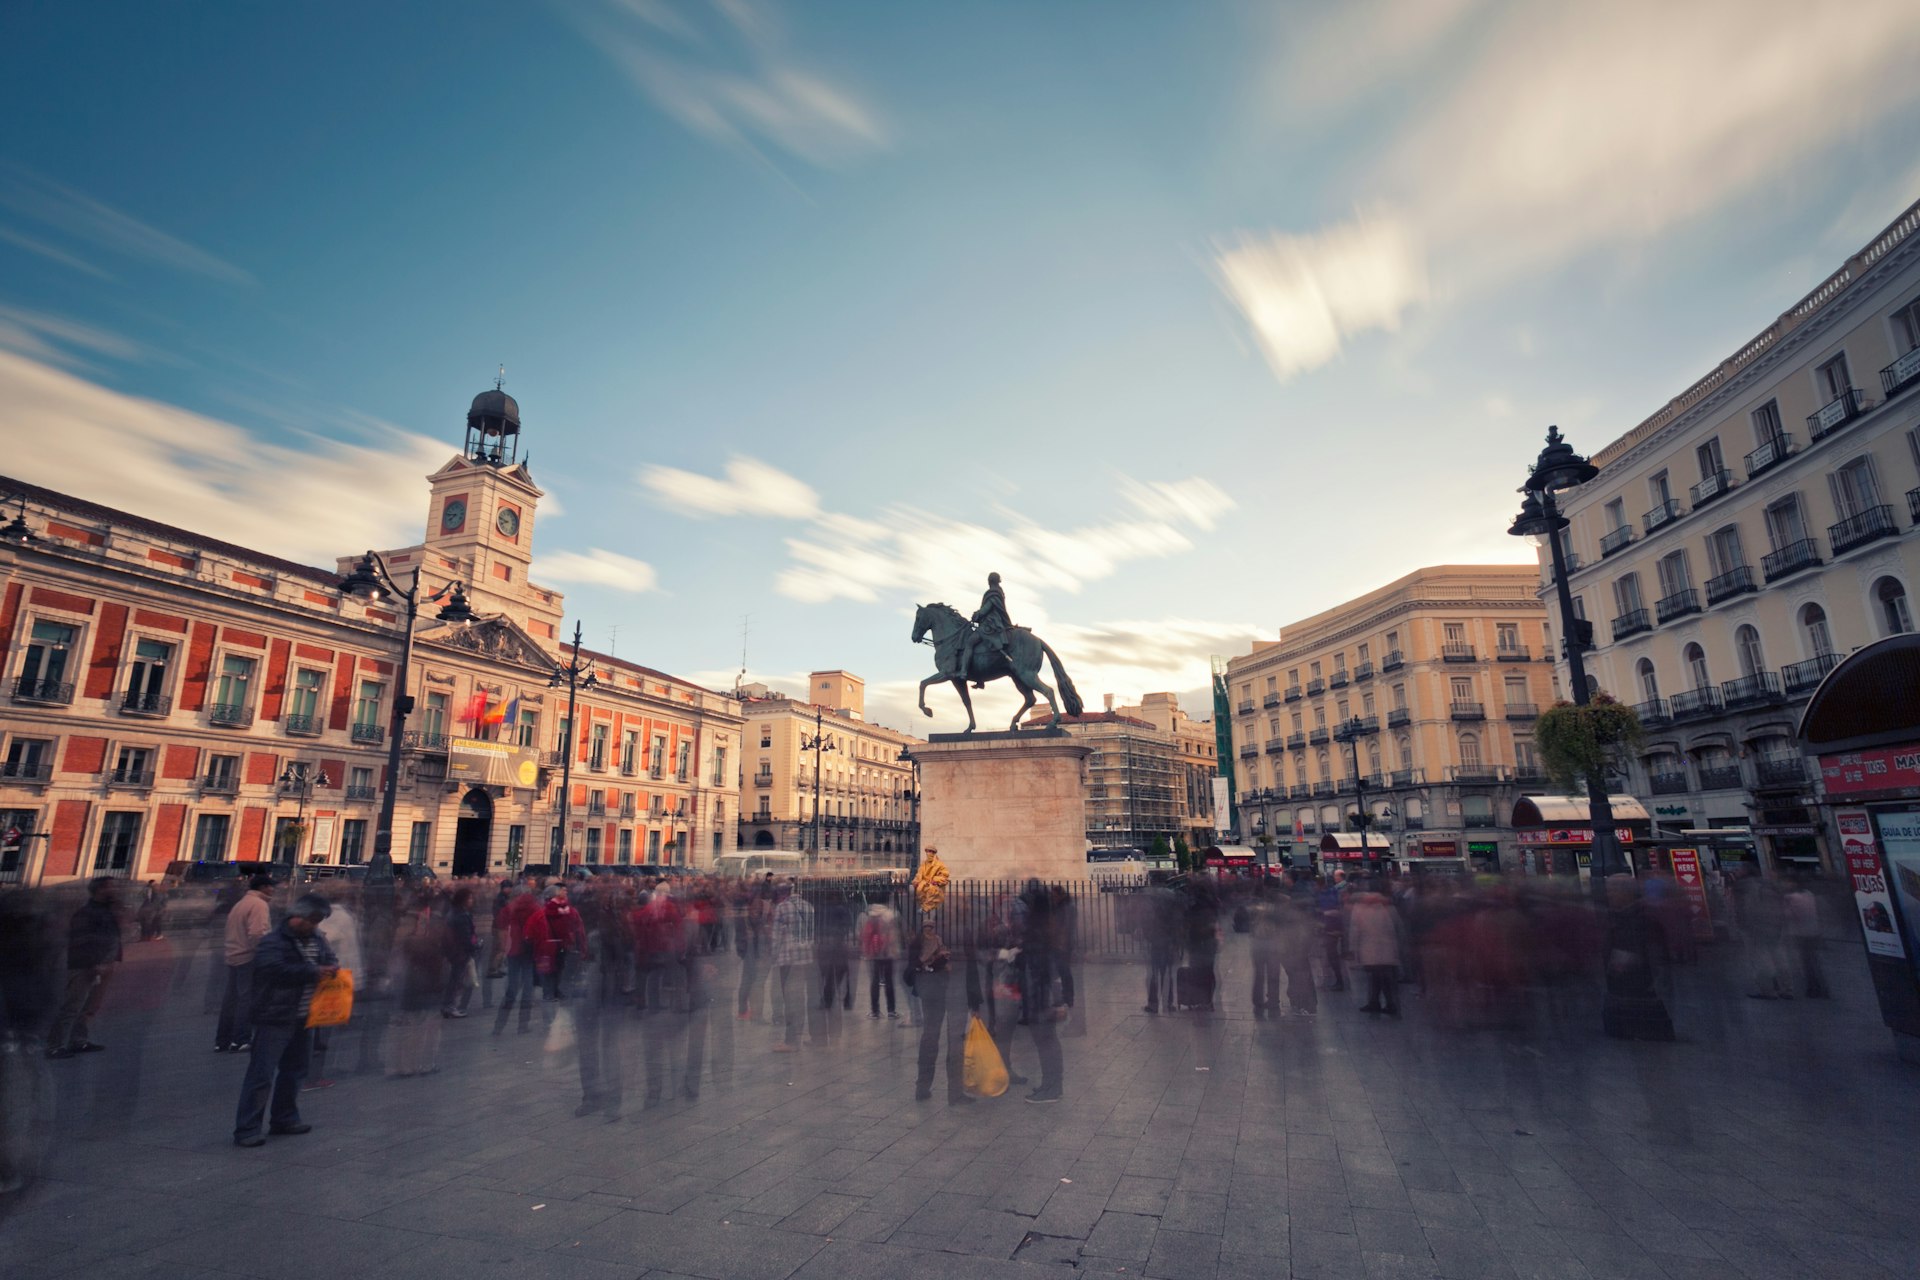 People in Plaza de la Puerta del Sol, Madrid